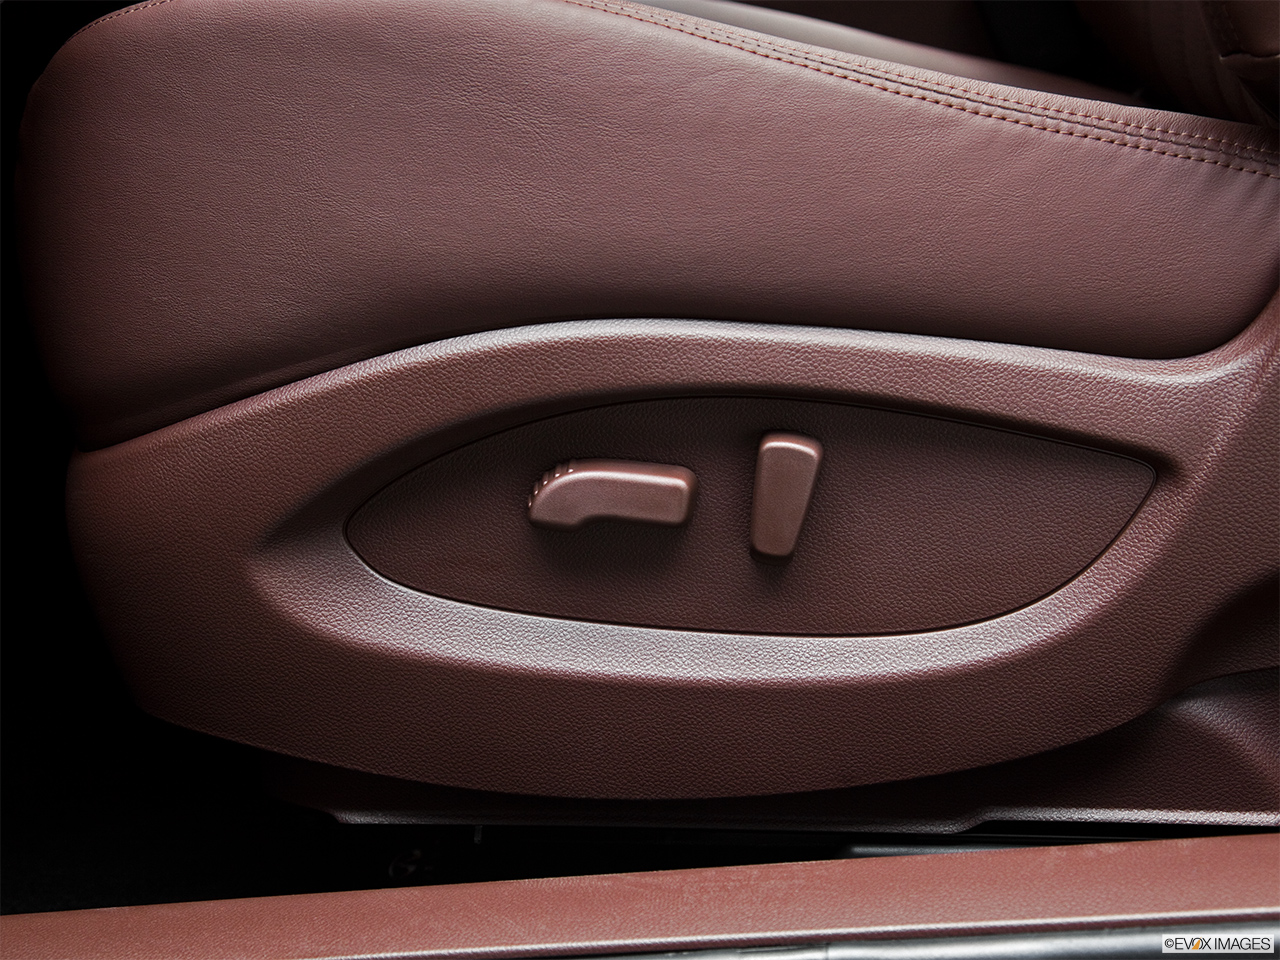 2011 Infiniti EX EX35 Journey Seat Adjustment Controllers. 